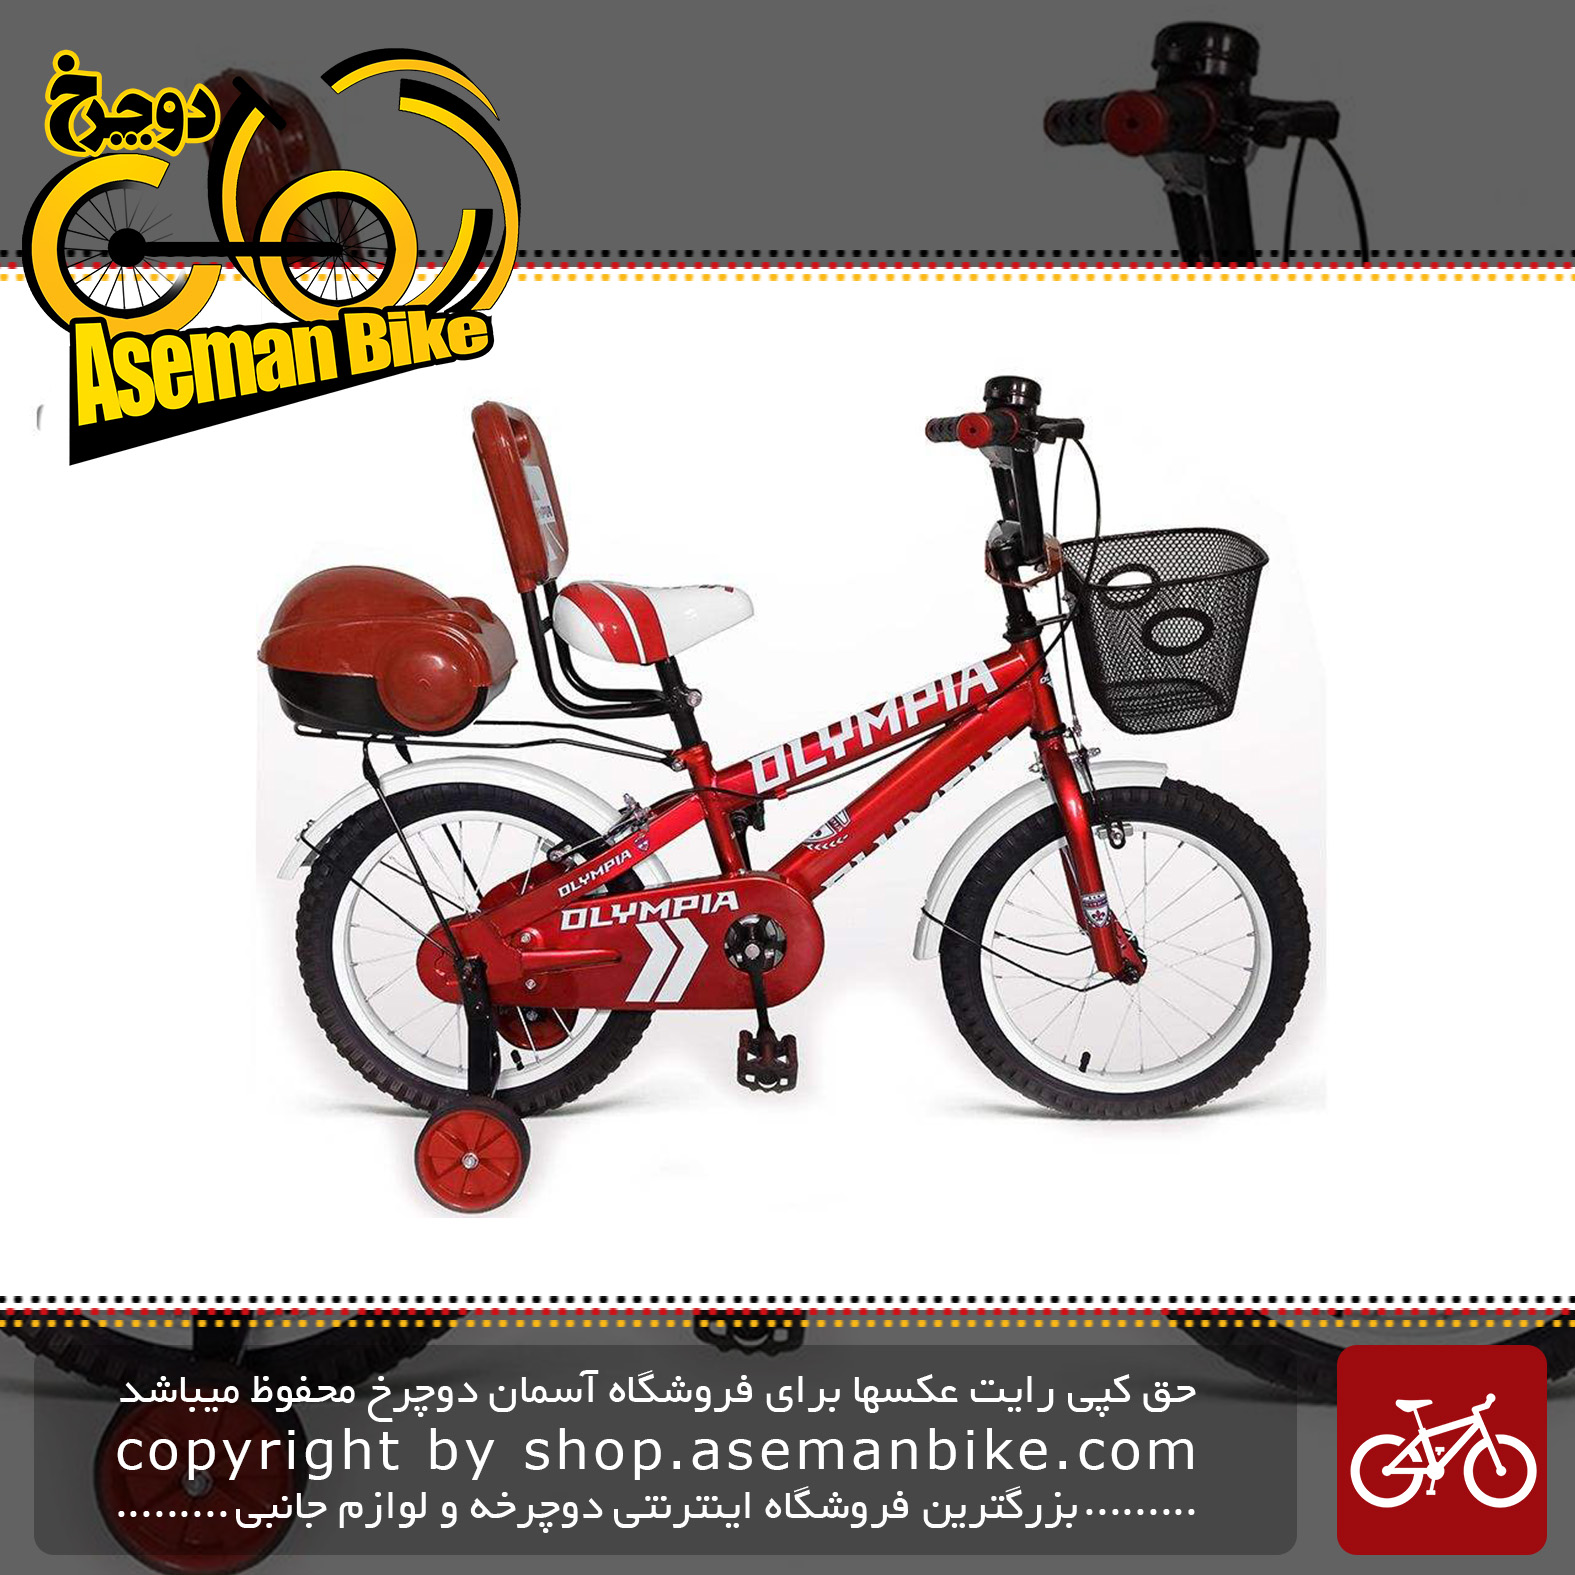  دوچرخه سواری بچه گانه المپیا مدل 16229 سایز 16 Olympia 16229 Baby Bike Size 16